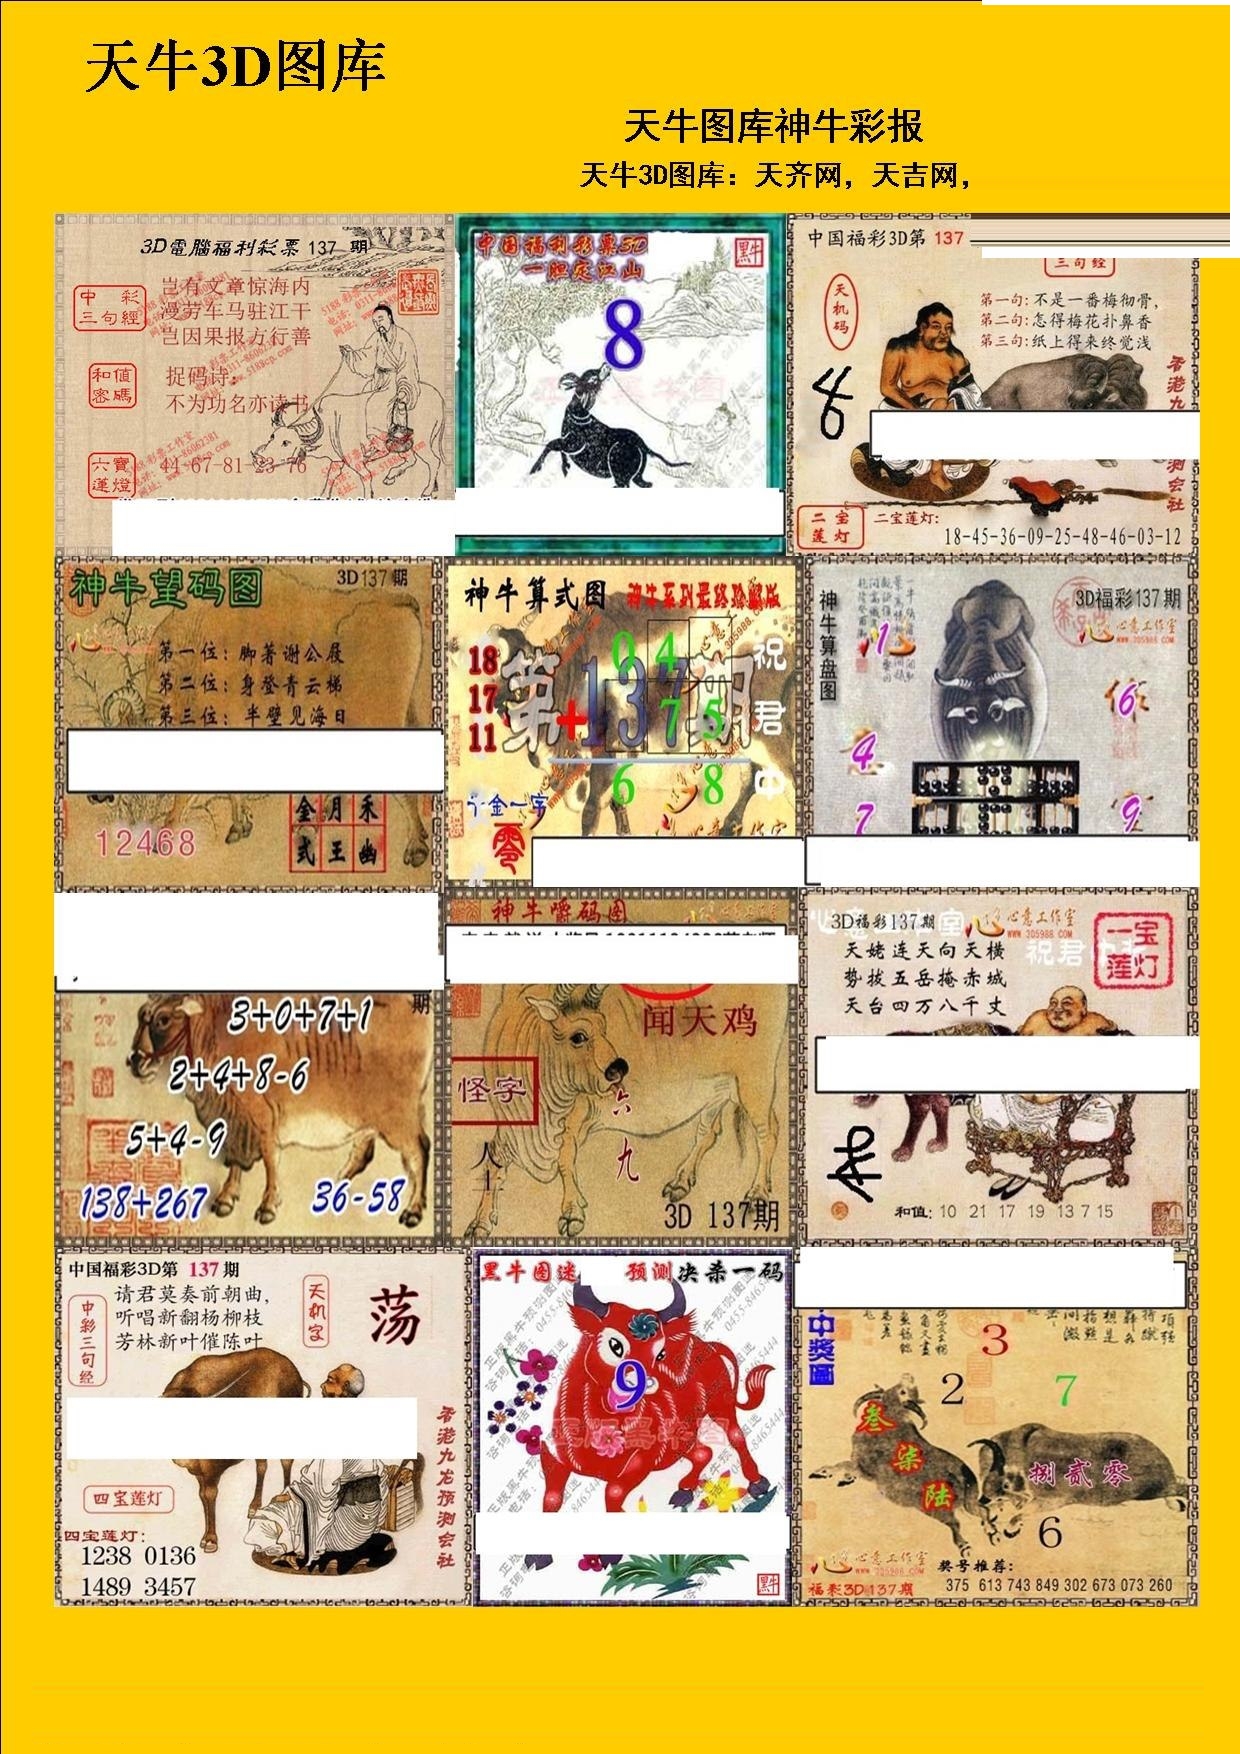 20137期福彩3d 天牛彩报图版系列 - 3d图库 - 为彩网